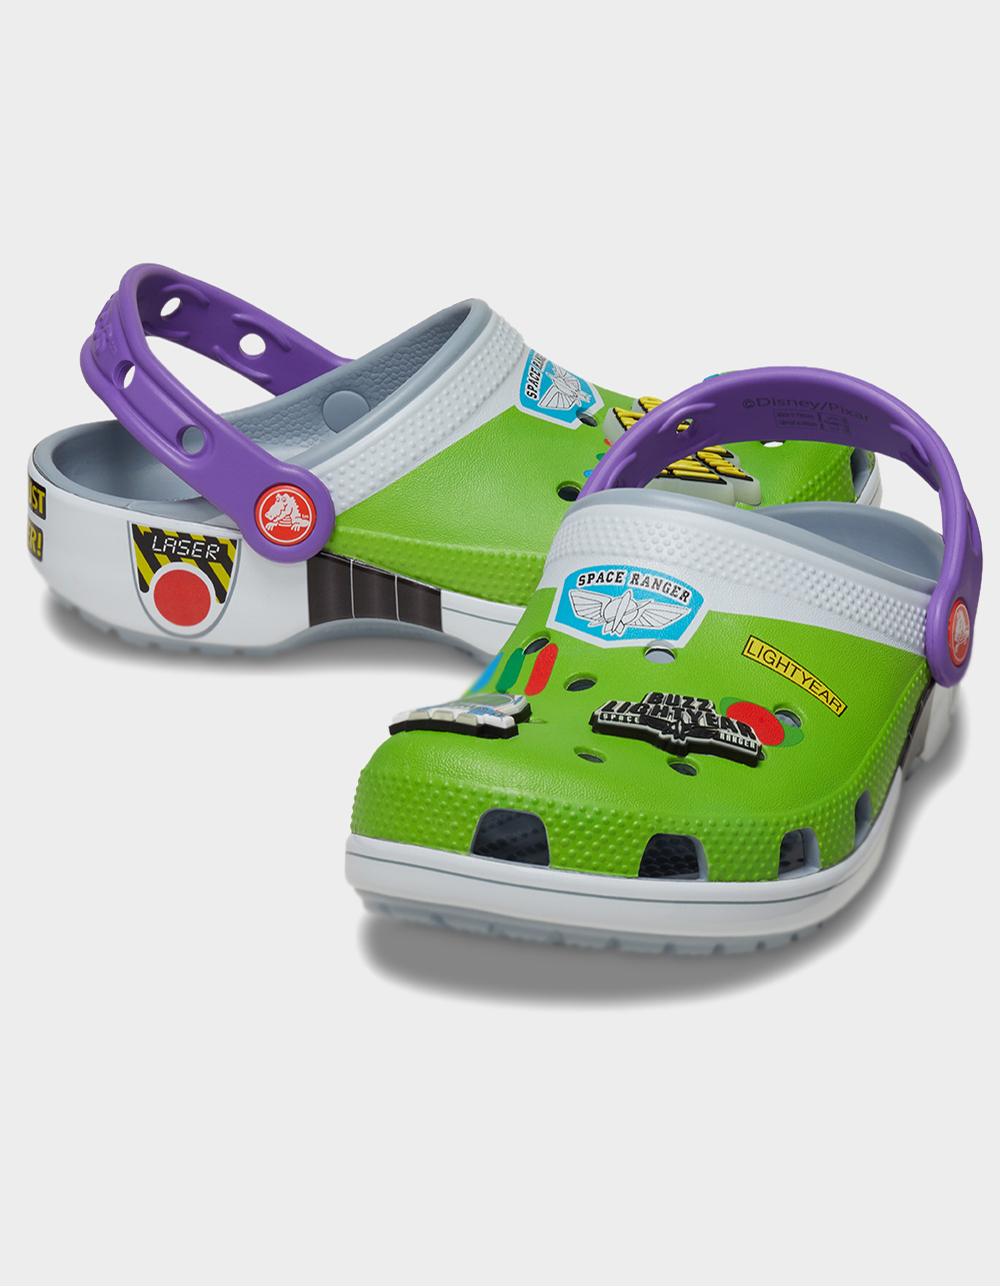 CROCS x Disney Pixar Toy Story Buzz Lightyear Kids Classic Clogs